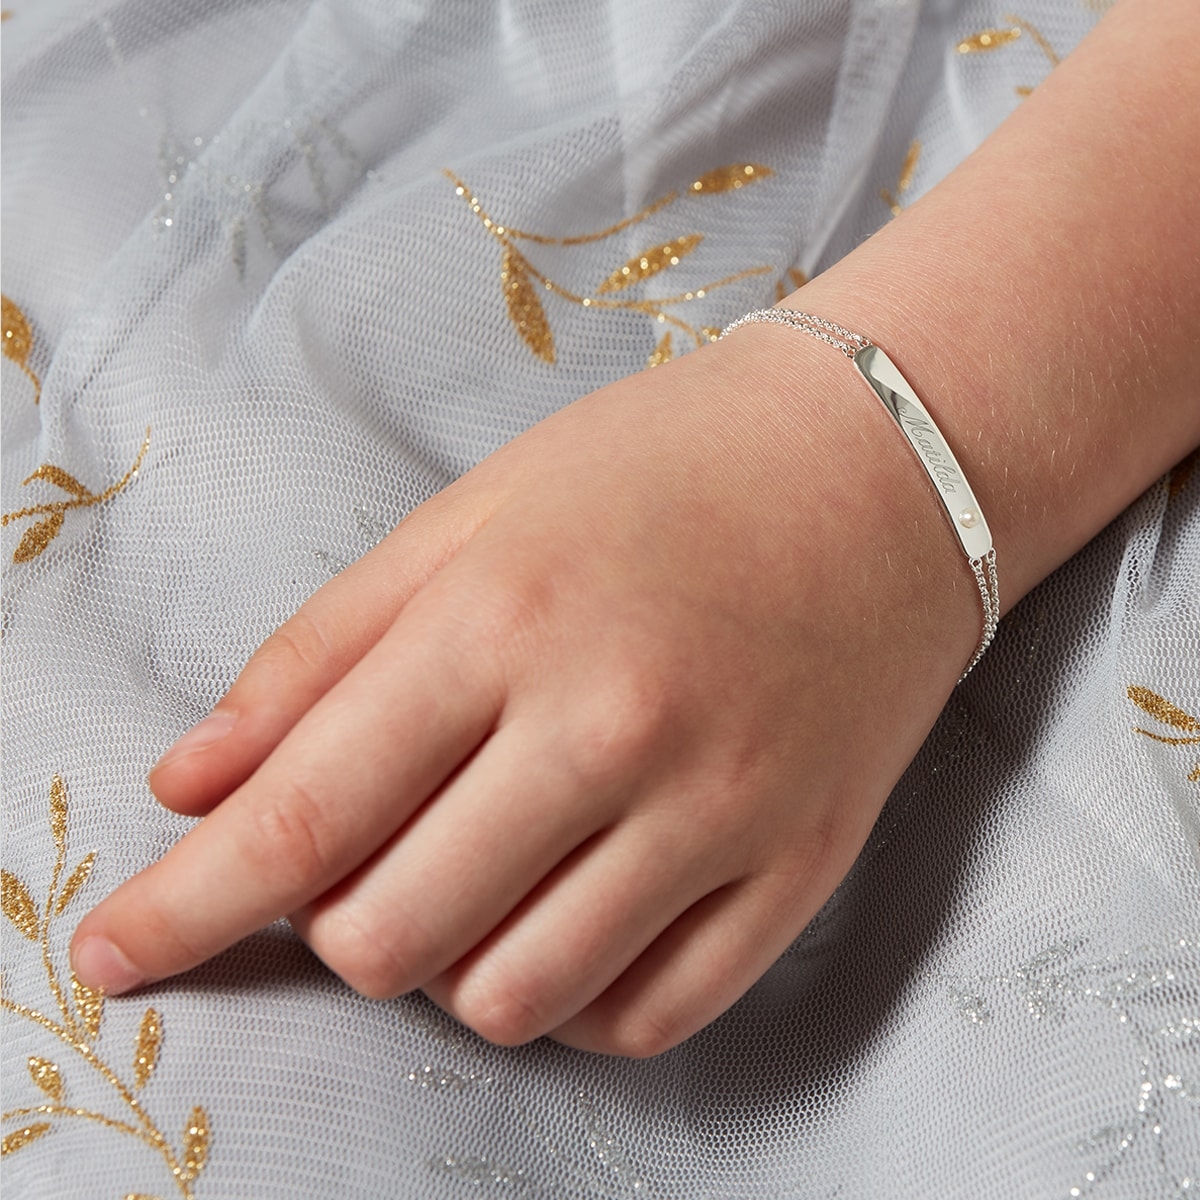 Personalised Birthstone Bracelet - June